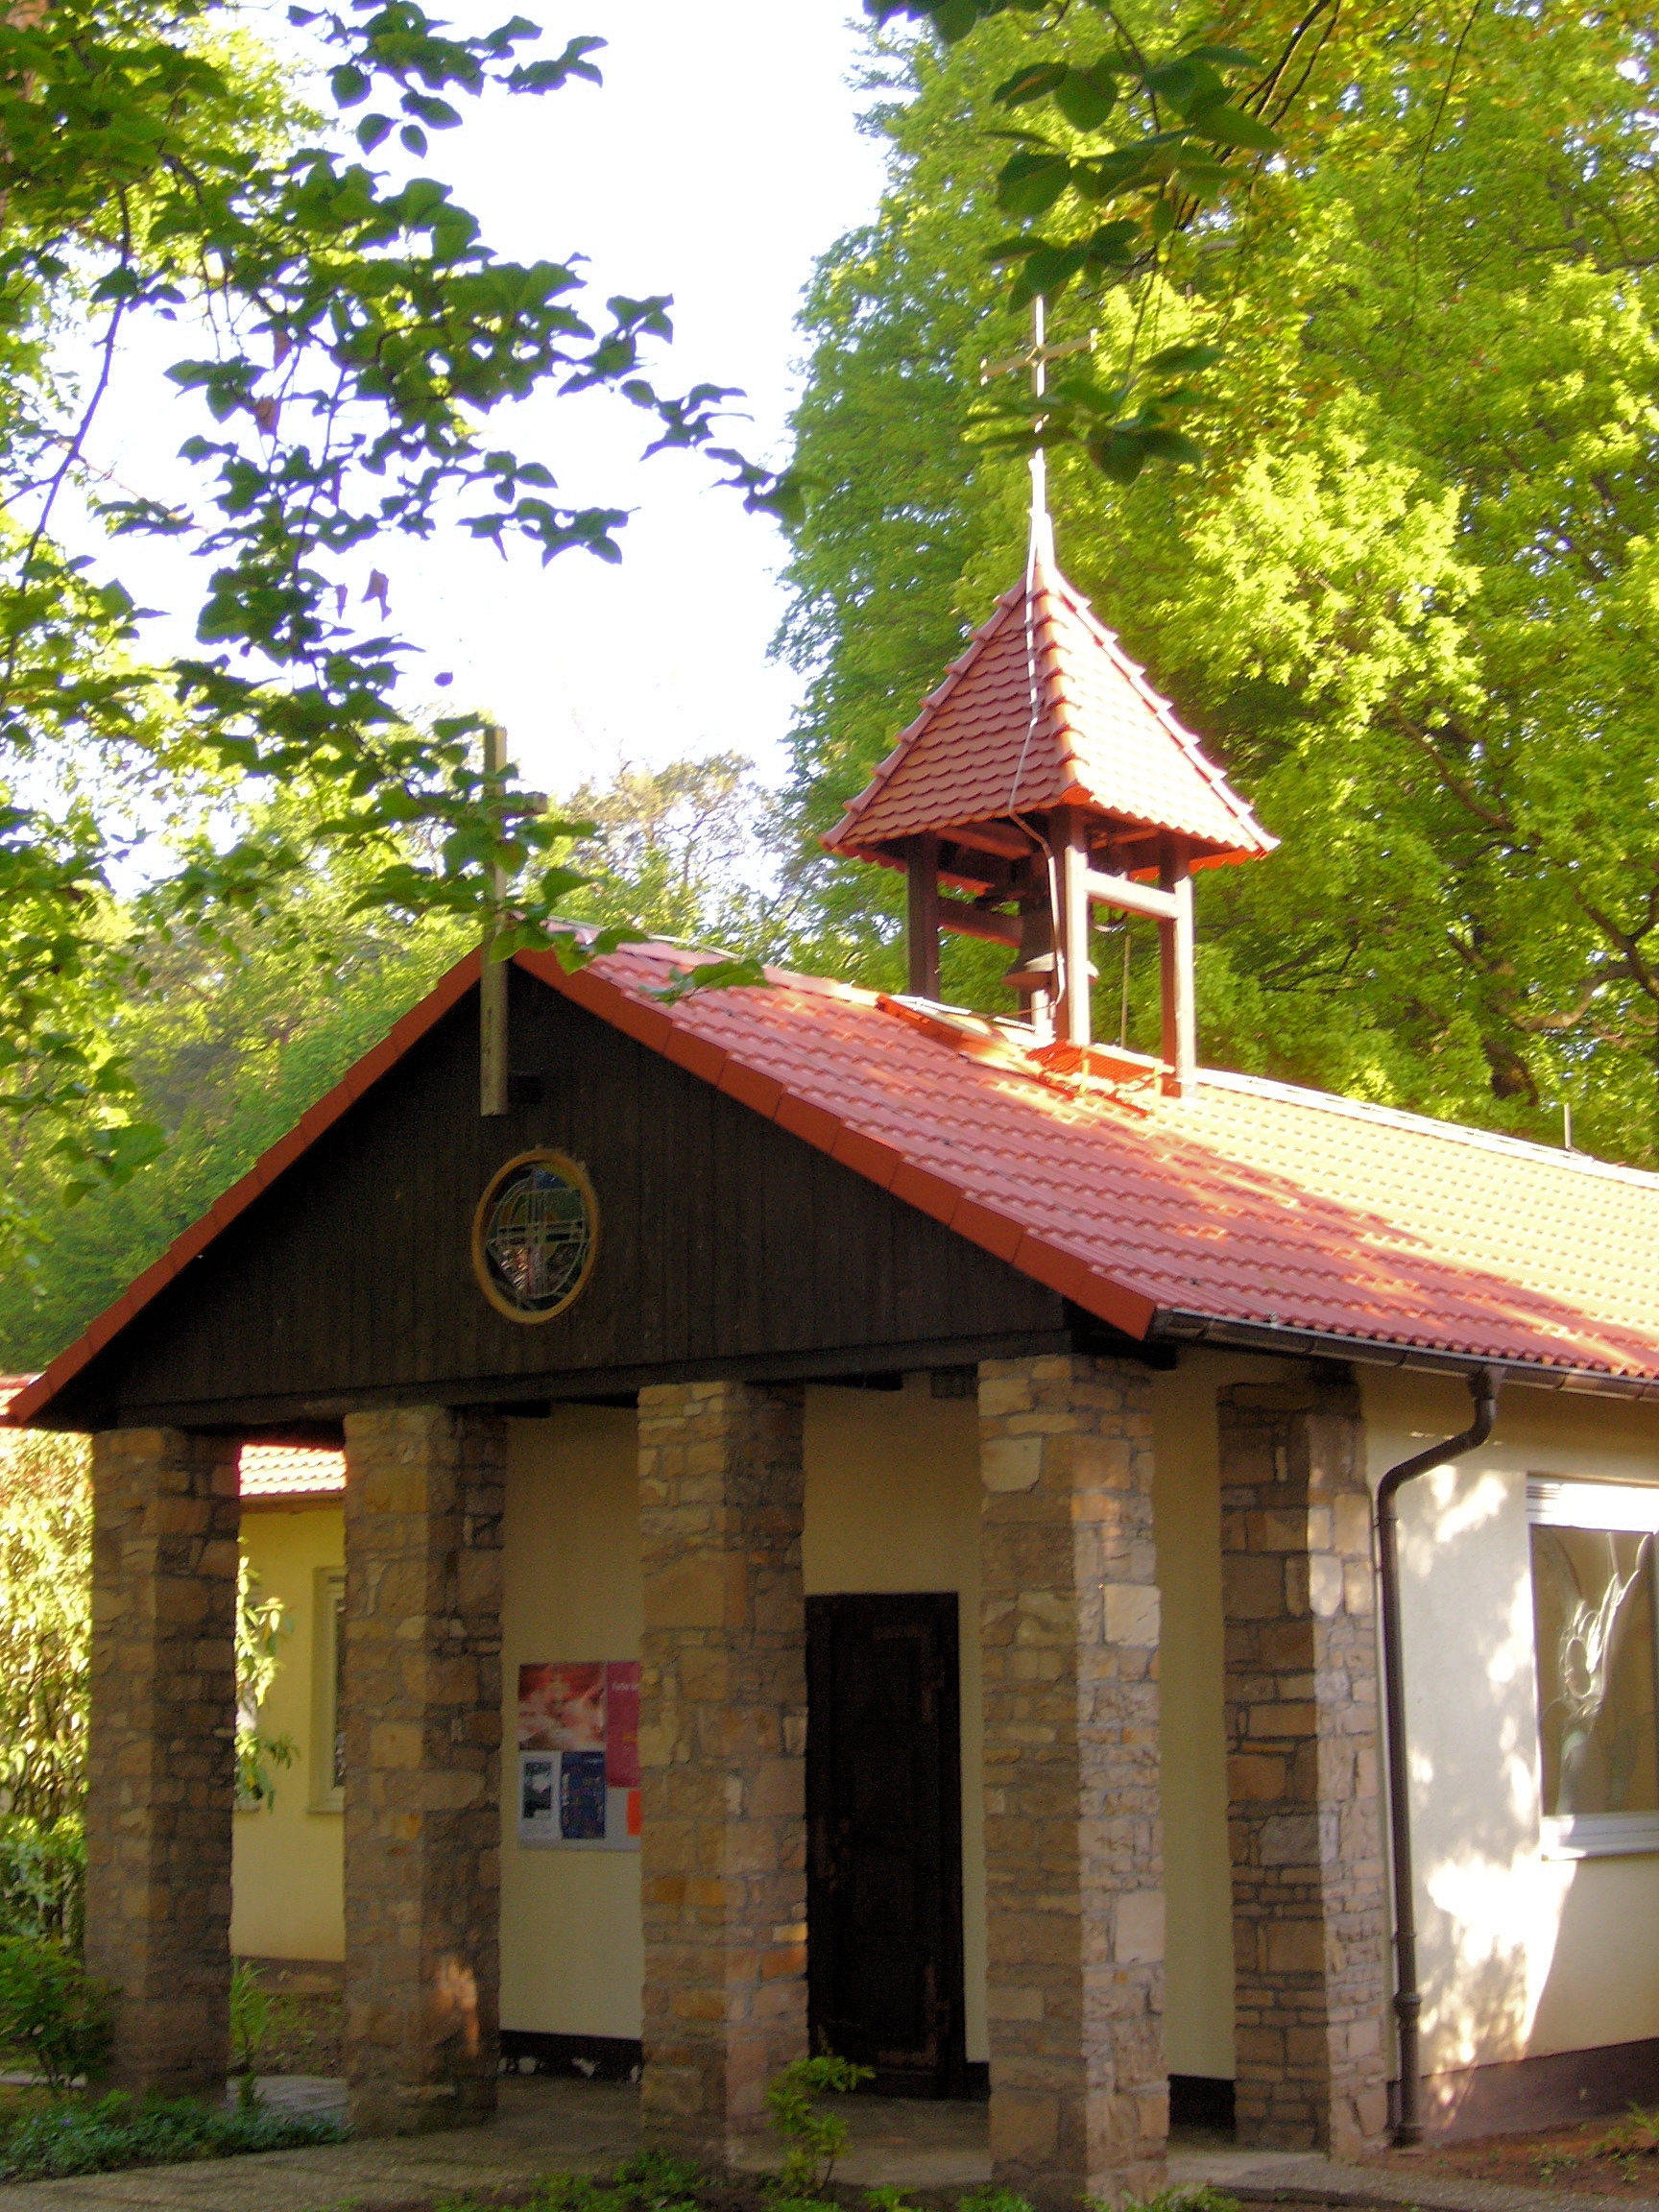 Bild 1 Waldkapelle Steinberg - Evangelische Martin-Luther-Gemeinde Dietzenbach-Steinberg in Dietzenbach